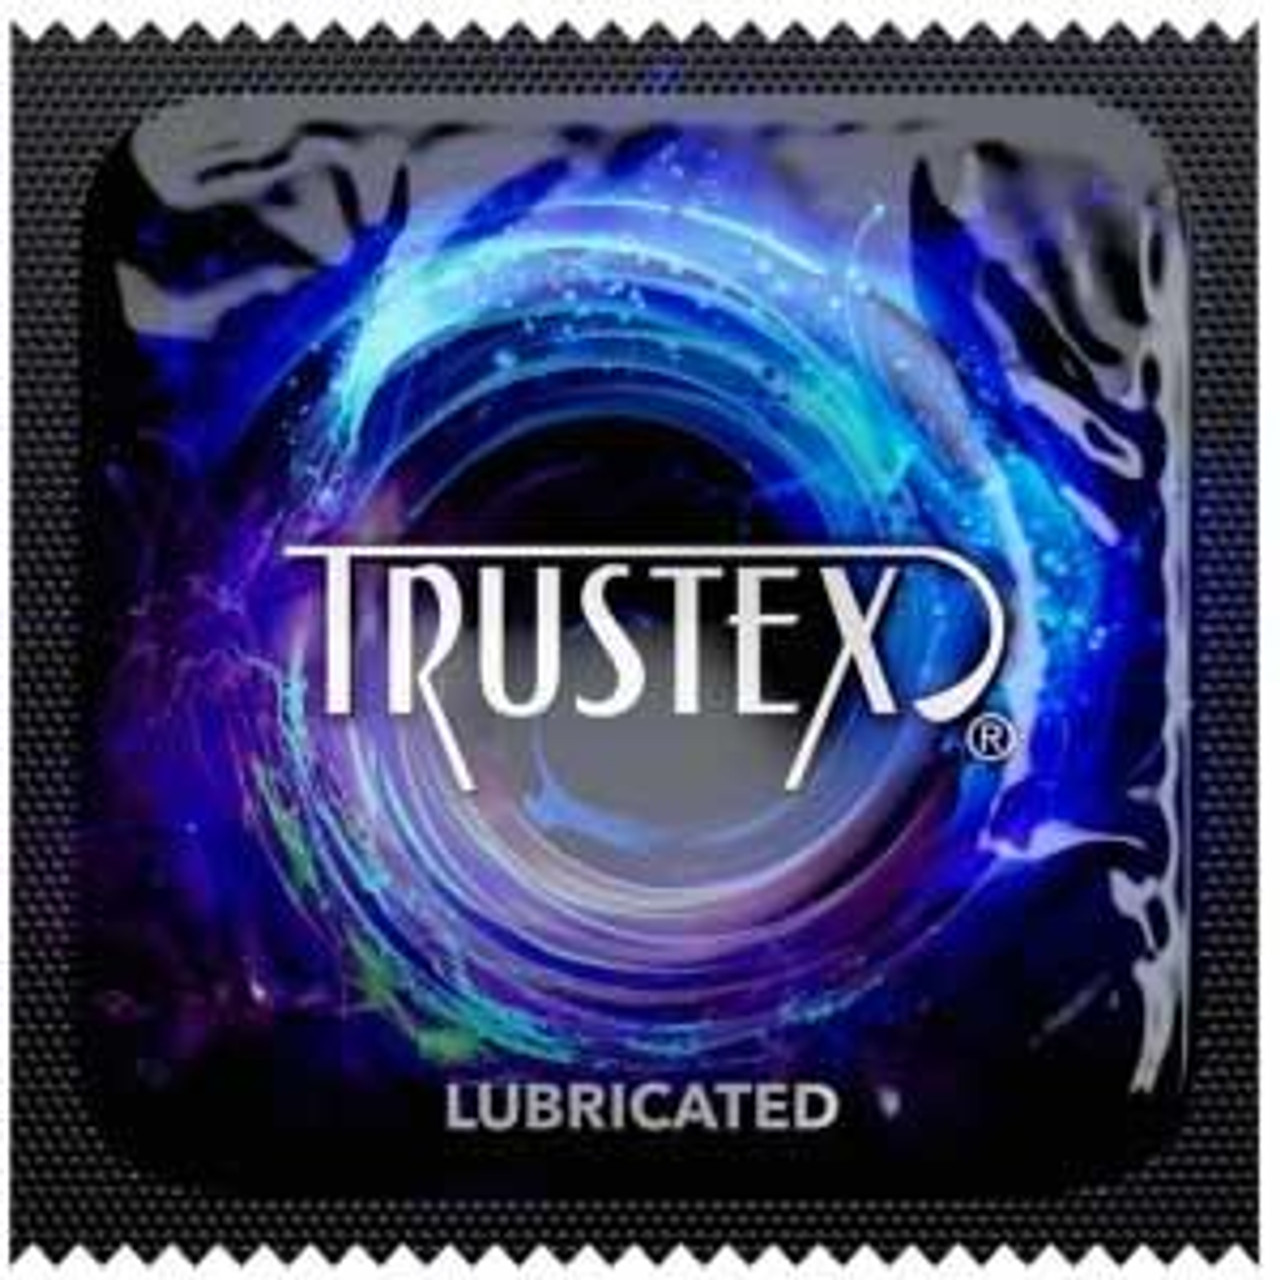 Buy Trustex Lubricated Condoms Online | CondomsFast.com